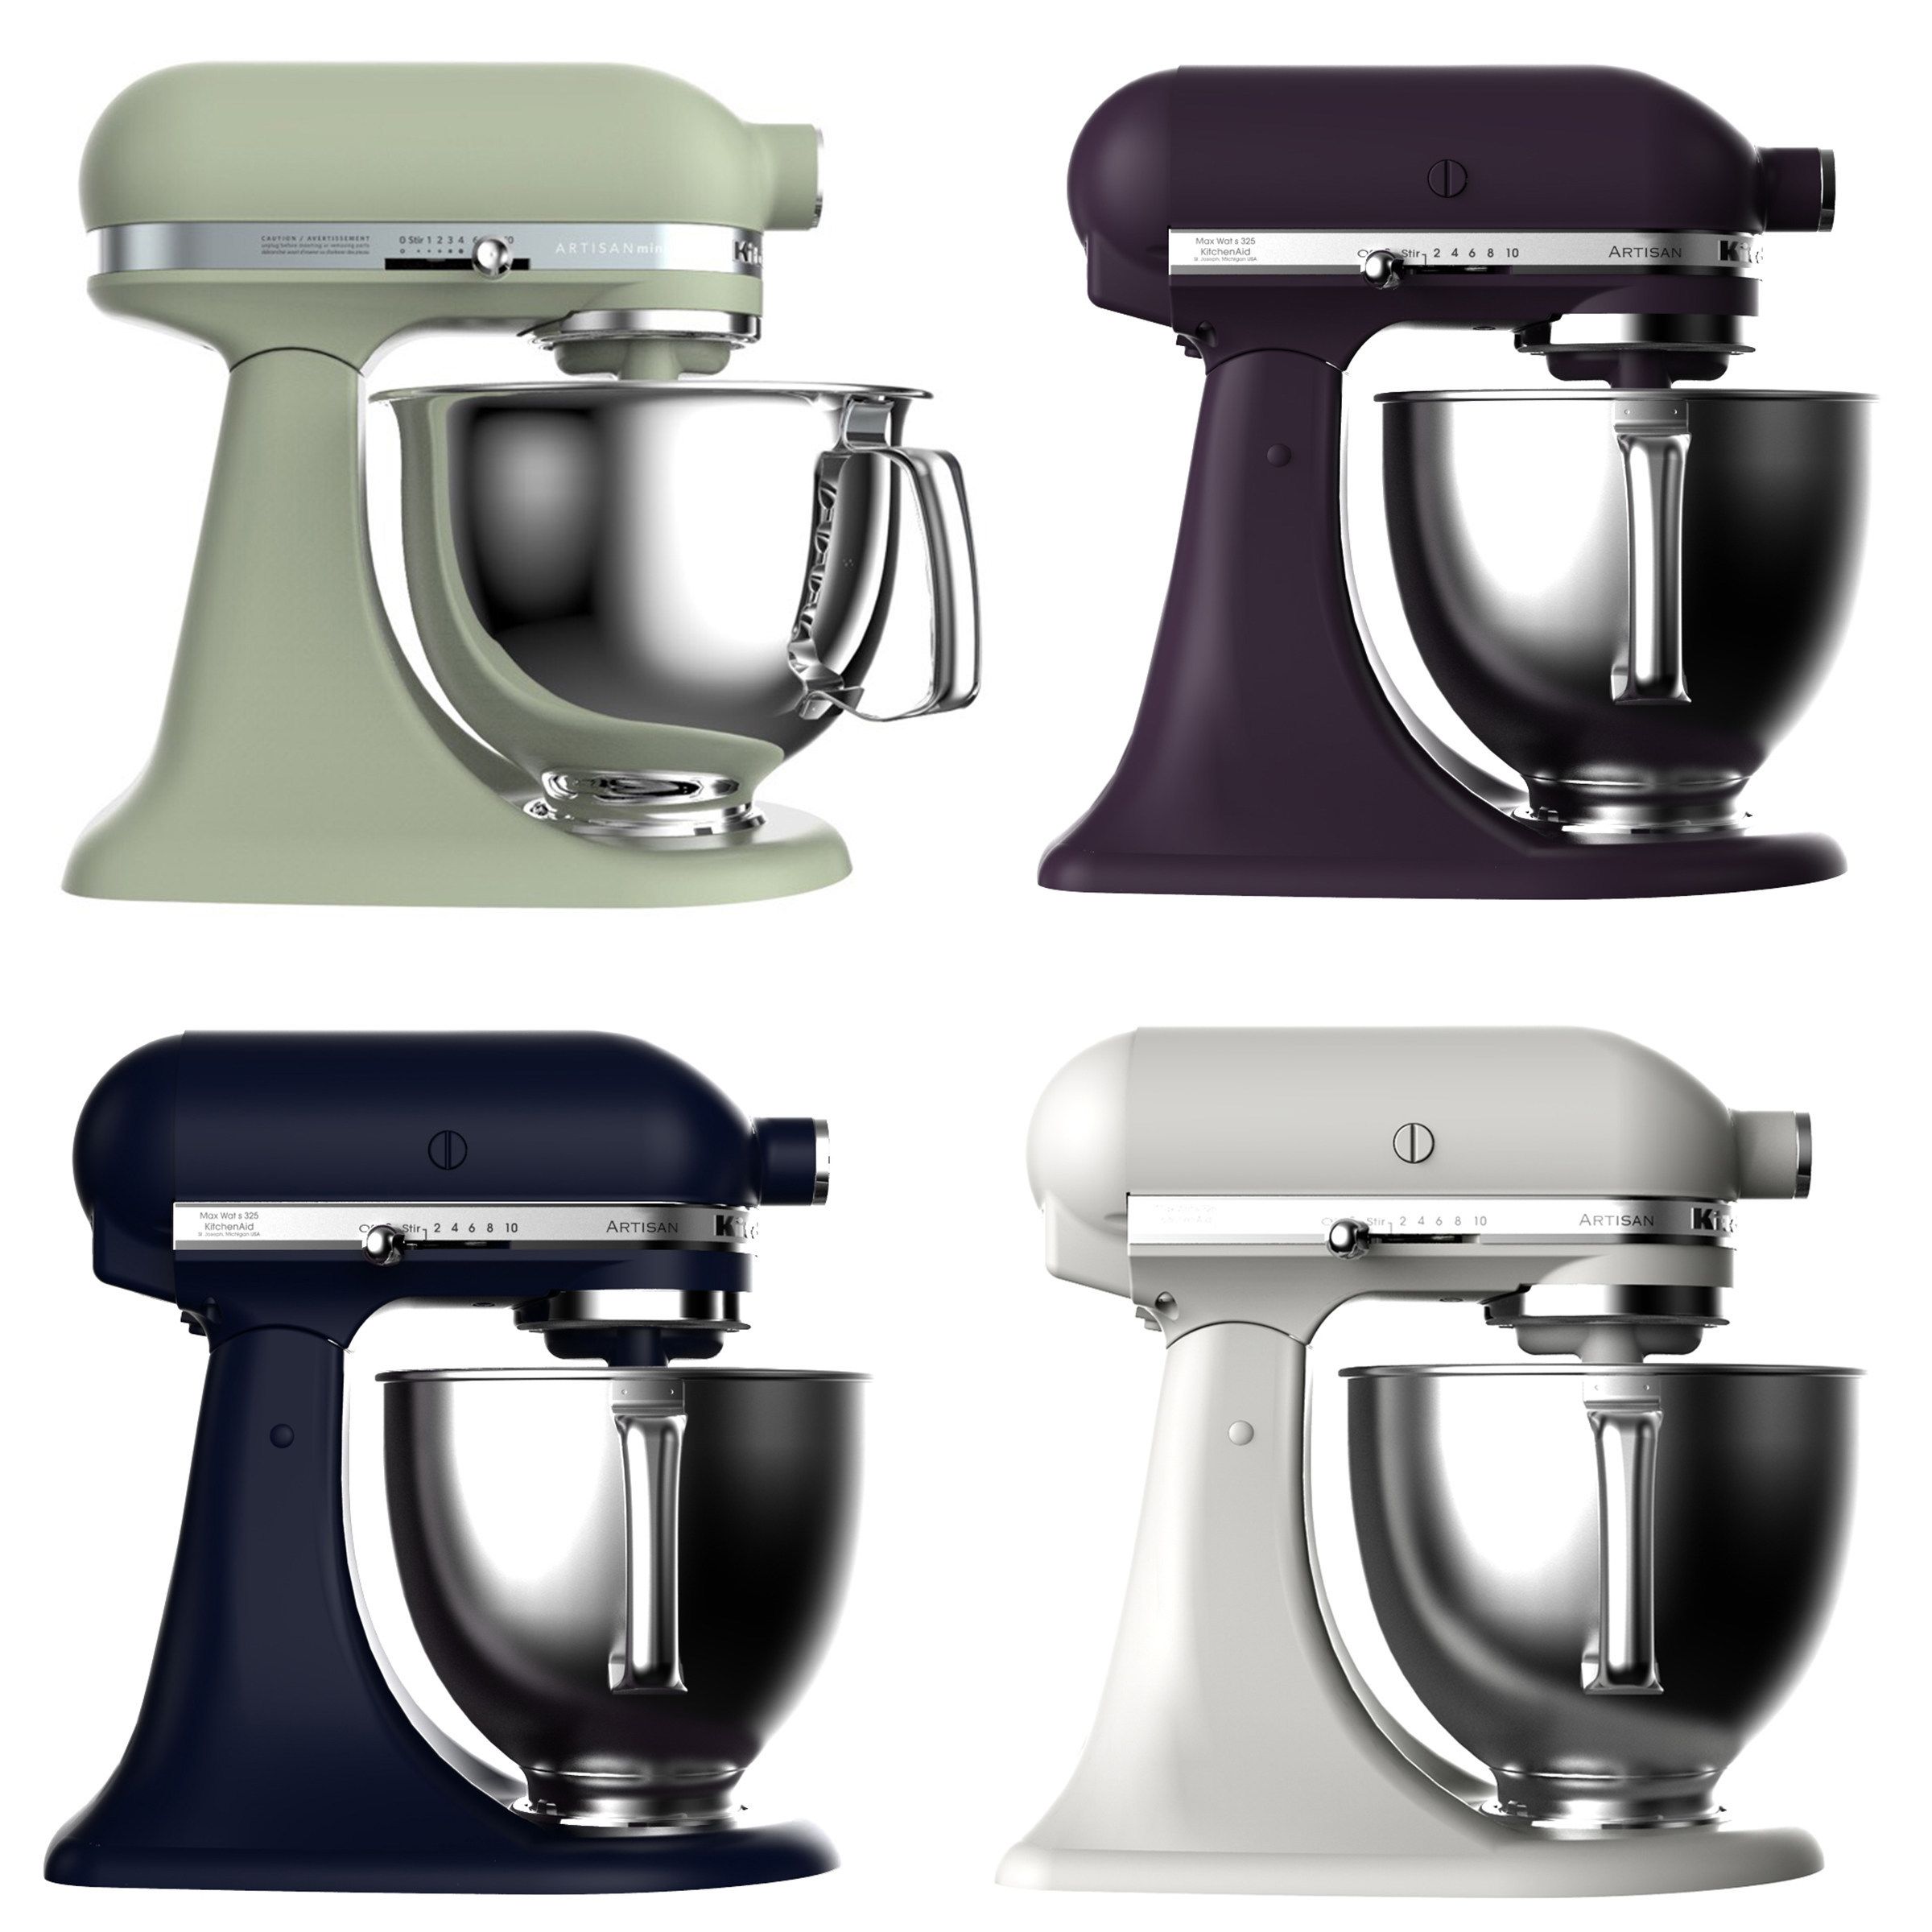 ildsted supplere køkken KitchenAid Reveals Four New Mixer Colors - New KitchenAid Colors